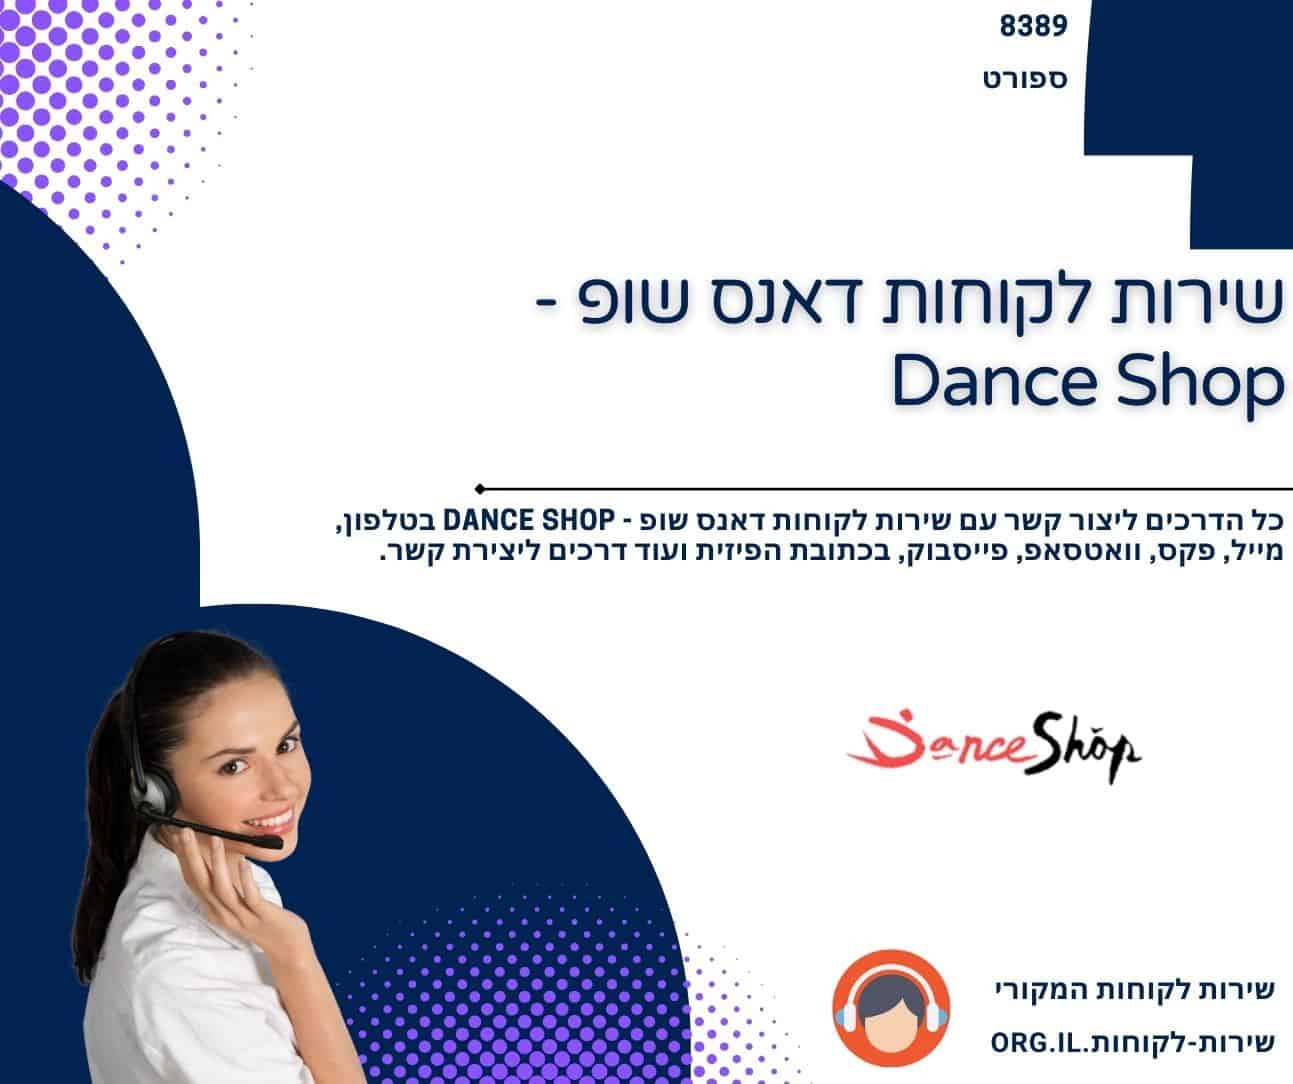 שירות לקוחות דאנס שופ - Dance Shop